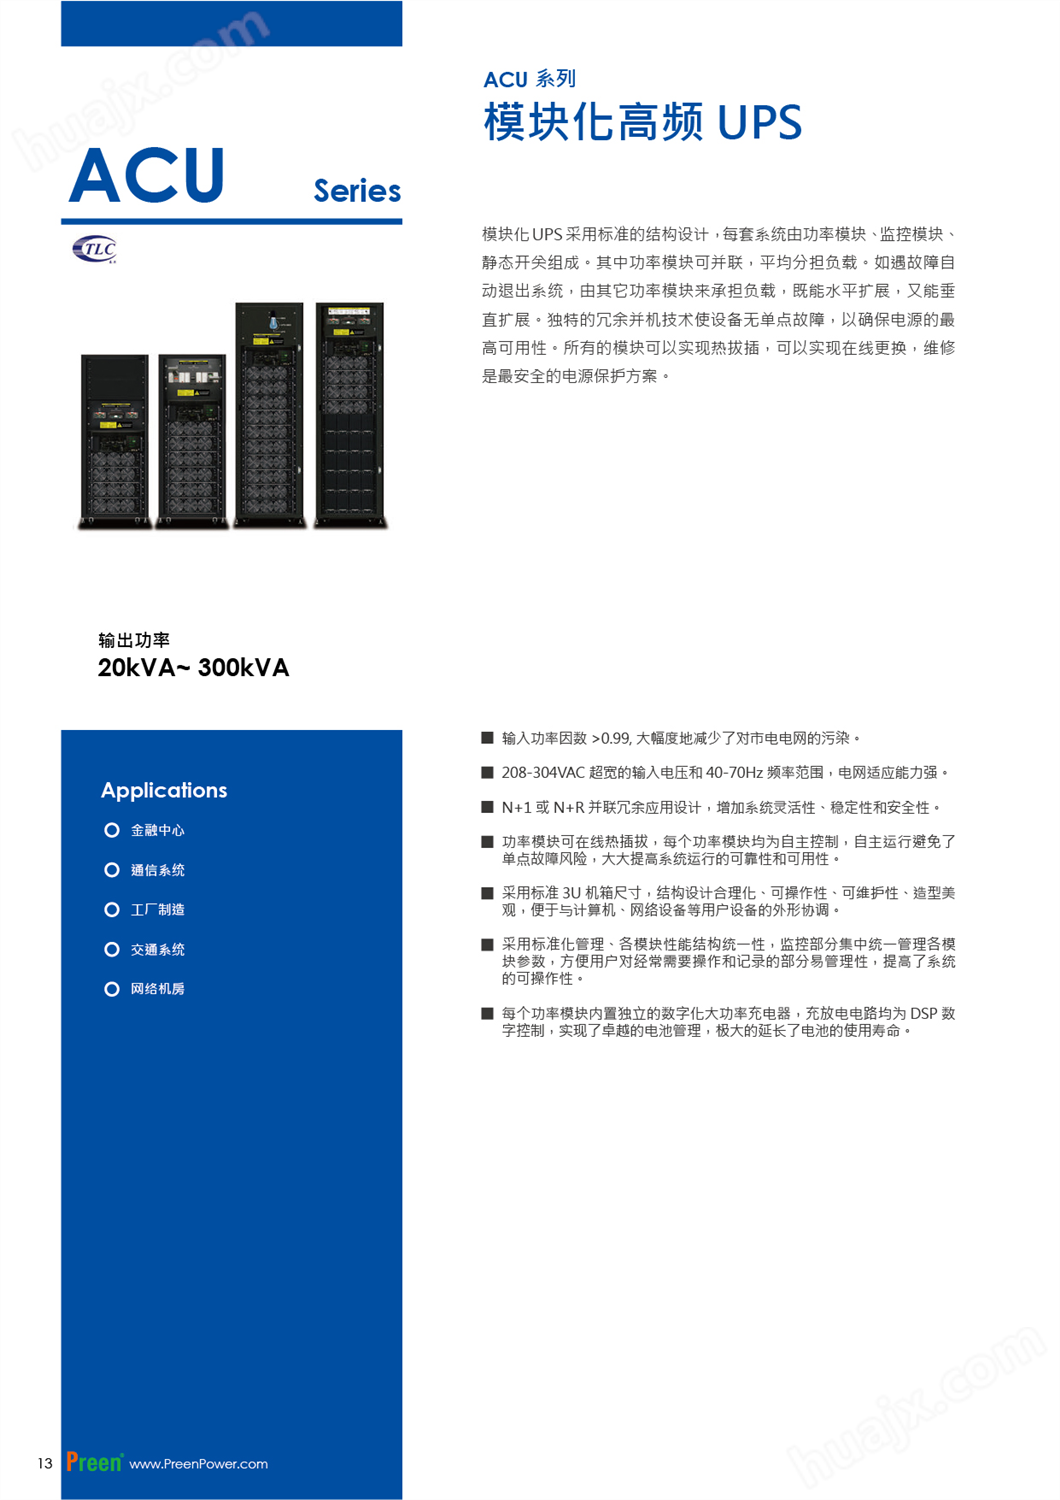 APC艾普斯模块化高频UPS ACU系列(图1)